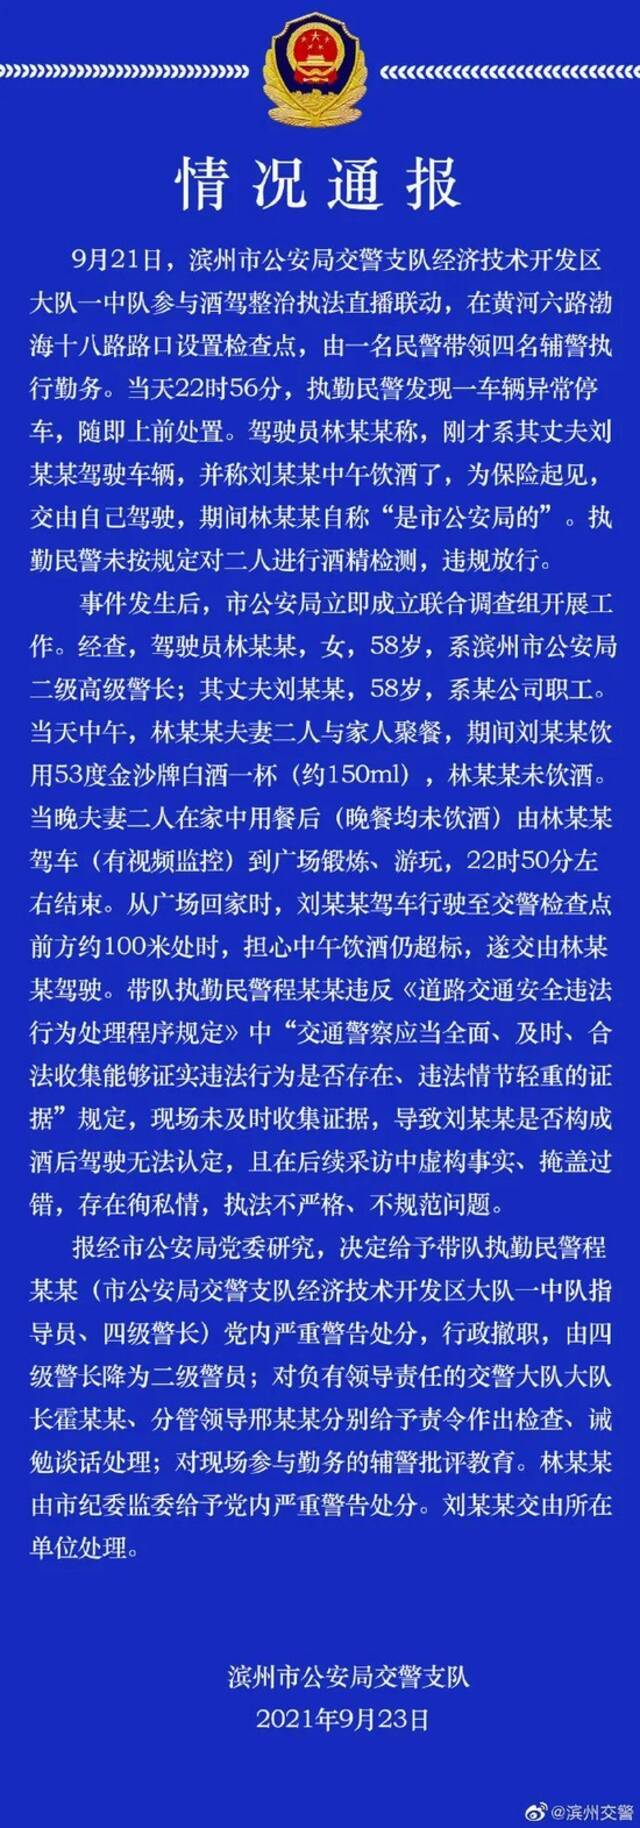 ▲9月23日，滨州市公安局交警支队发布情况通报。图/滨州交警官方微博